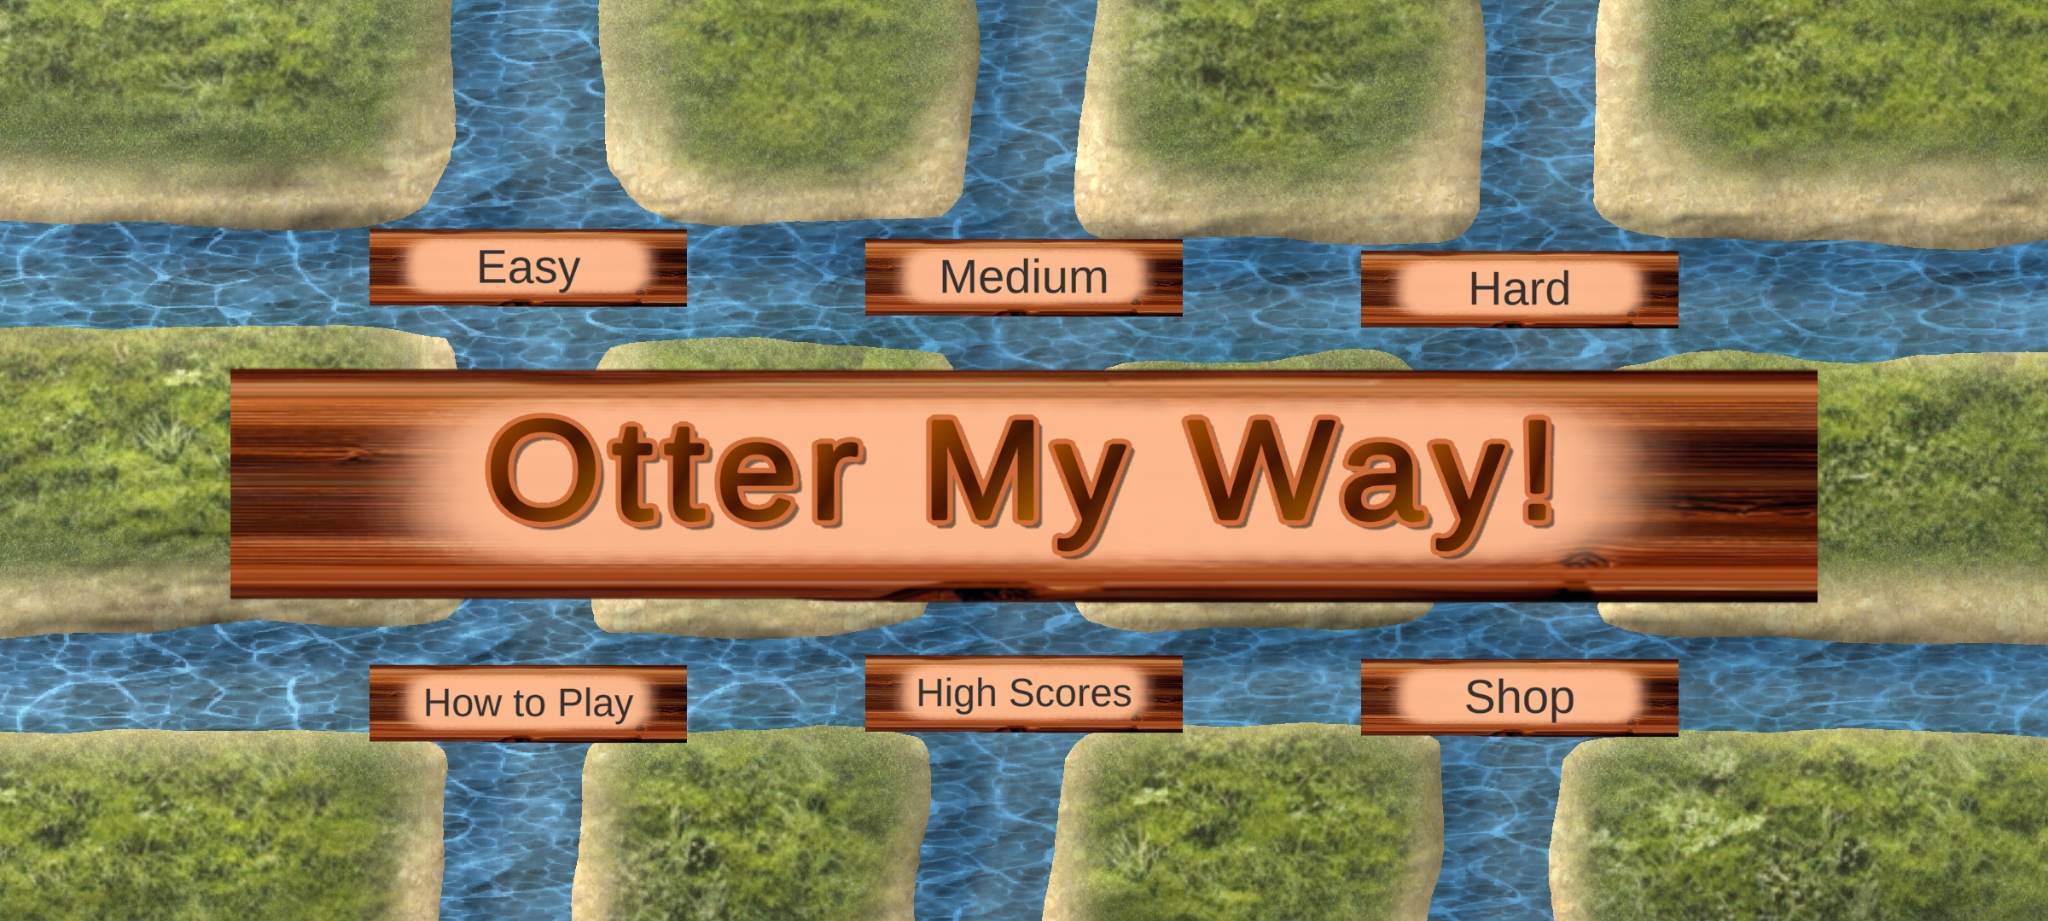 Otter My Way! screenshot game